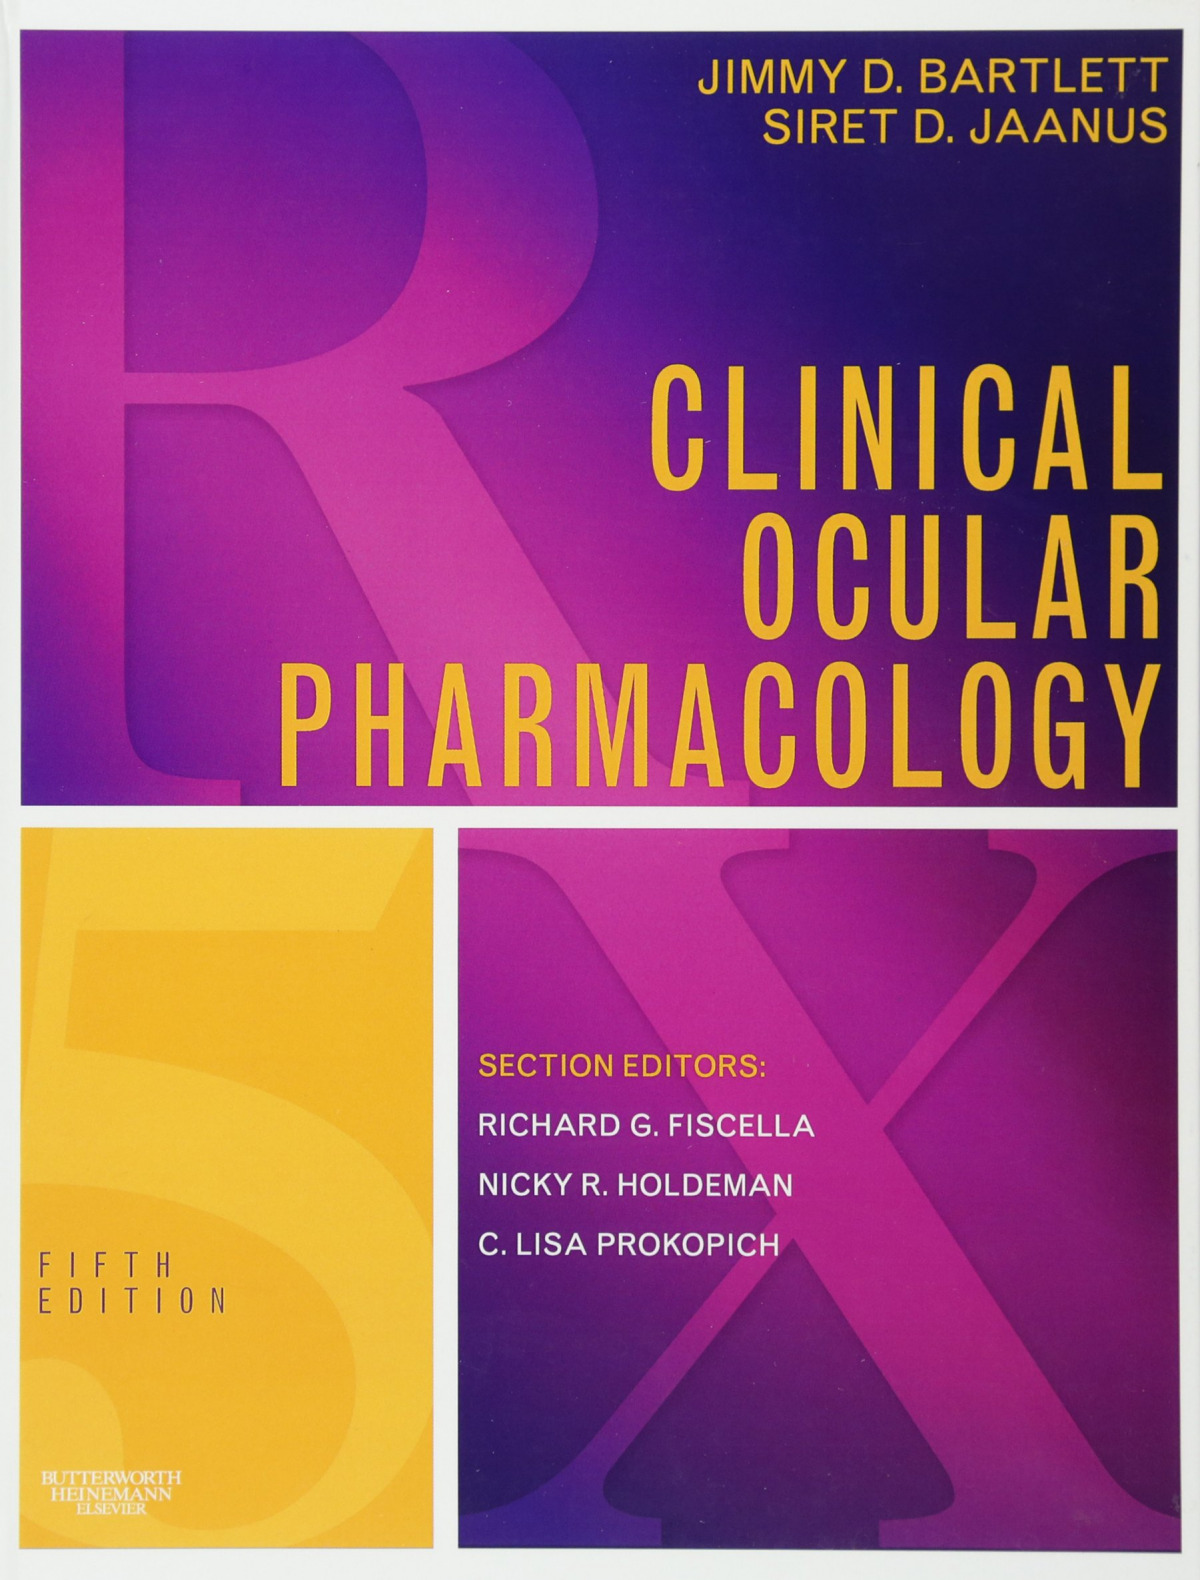 Clinical ocular pharmacology - Bartlett/Jaanus